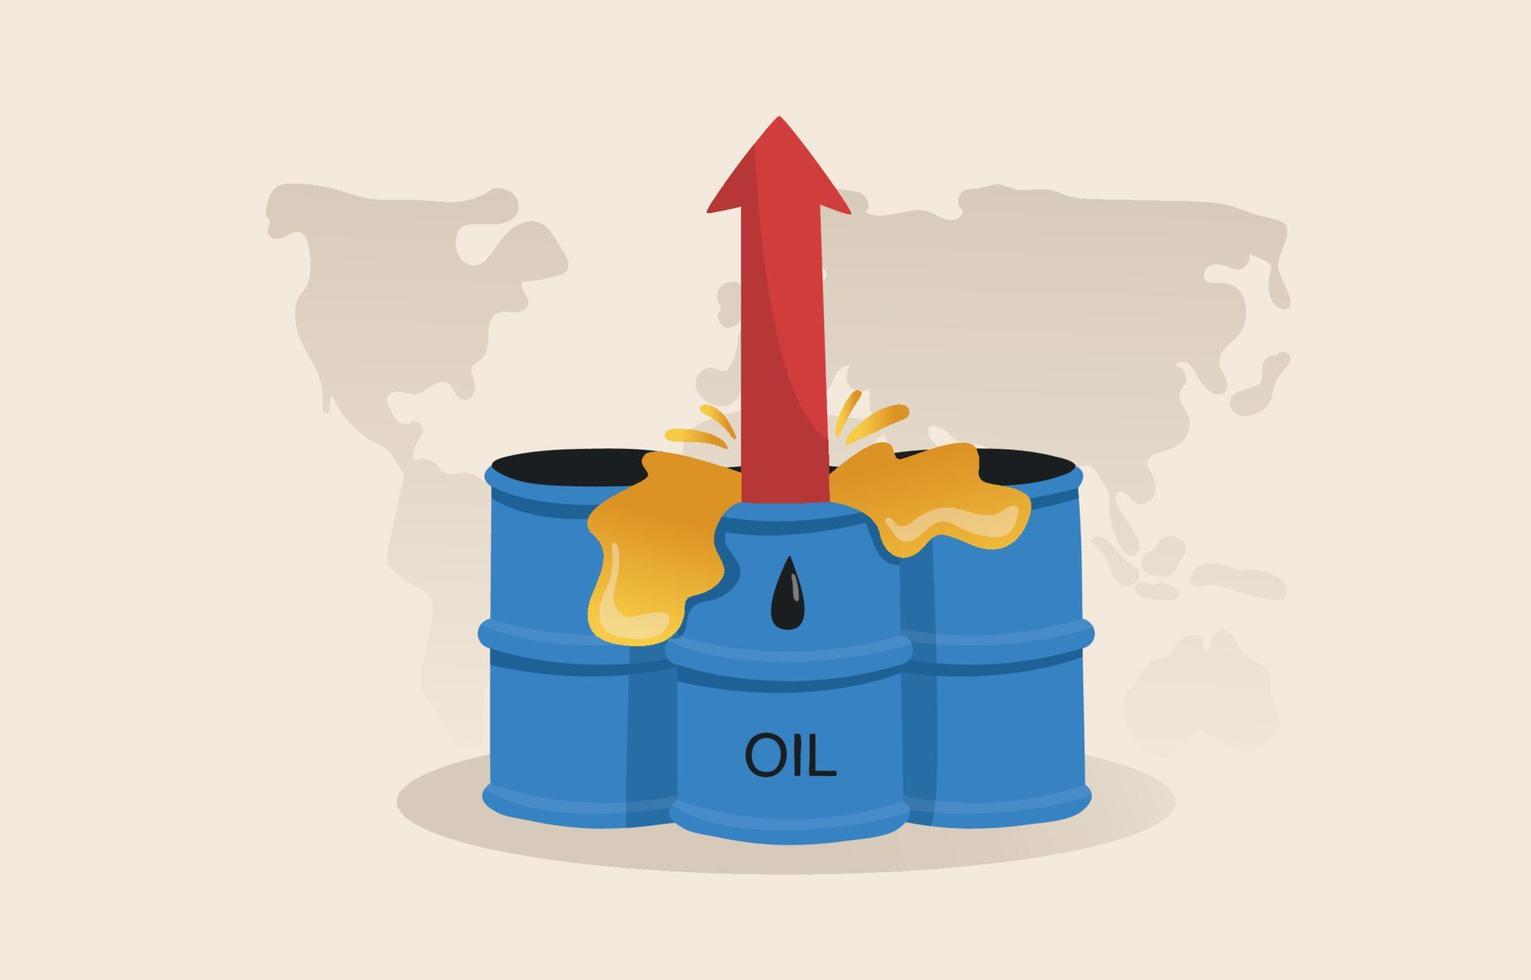 les prix mondiaux du pétrole ont atteint un niveau critique. la crise de l'économie de carburant et le concept de prix du gaz coûteux. vecteur